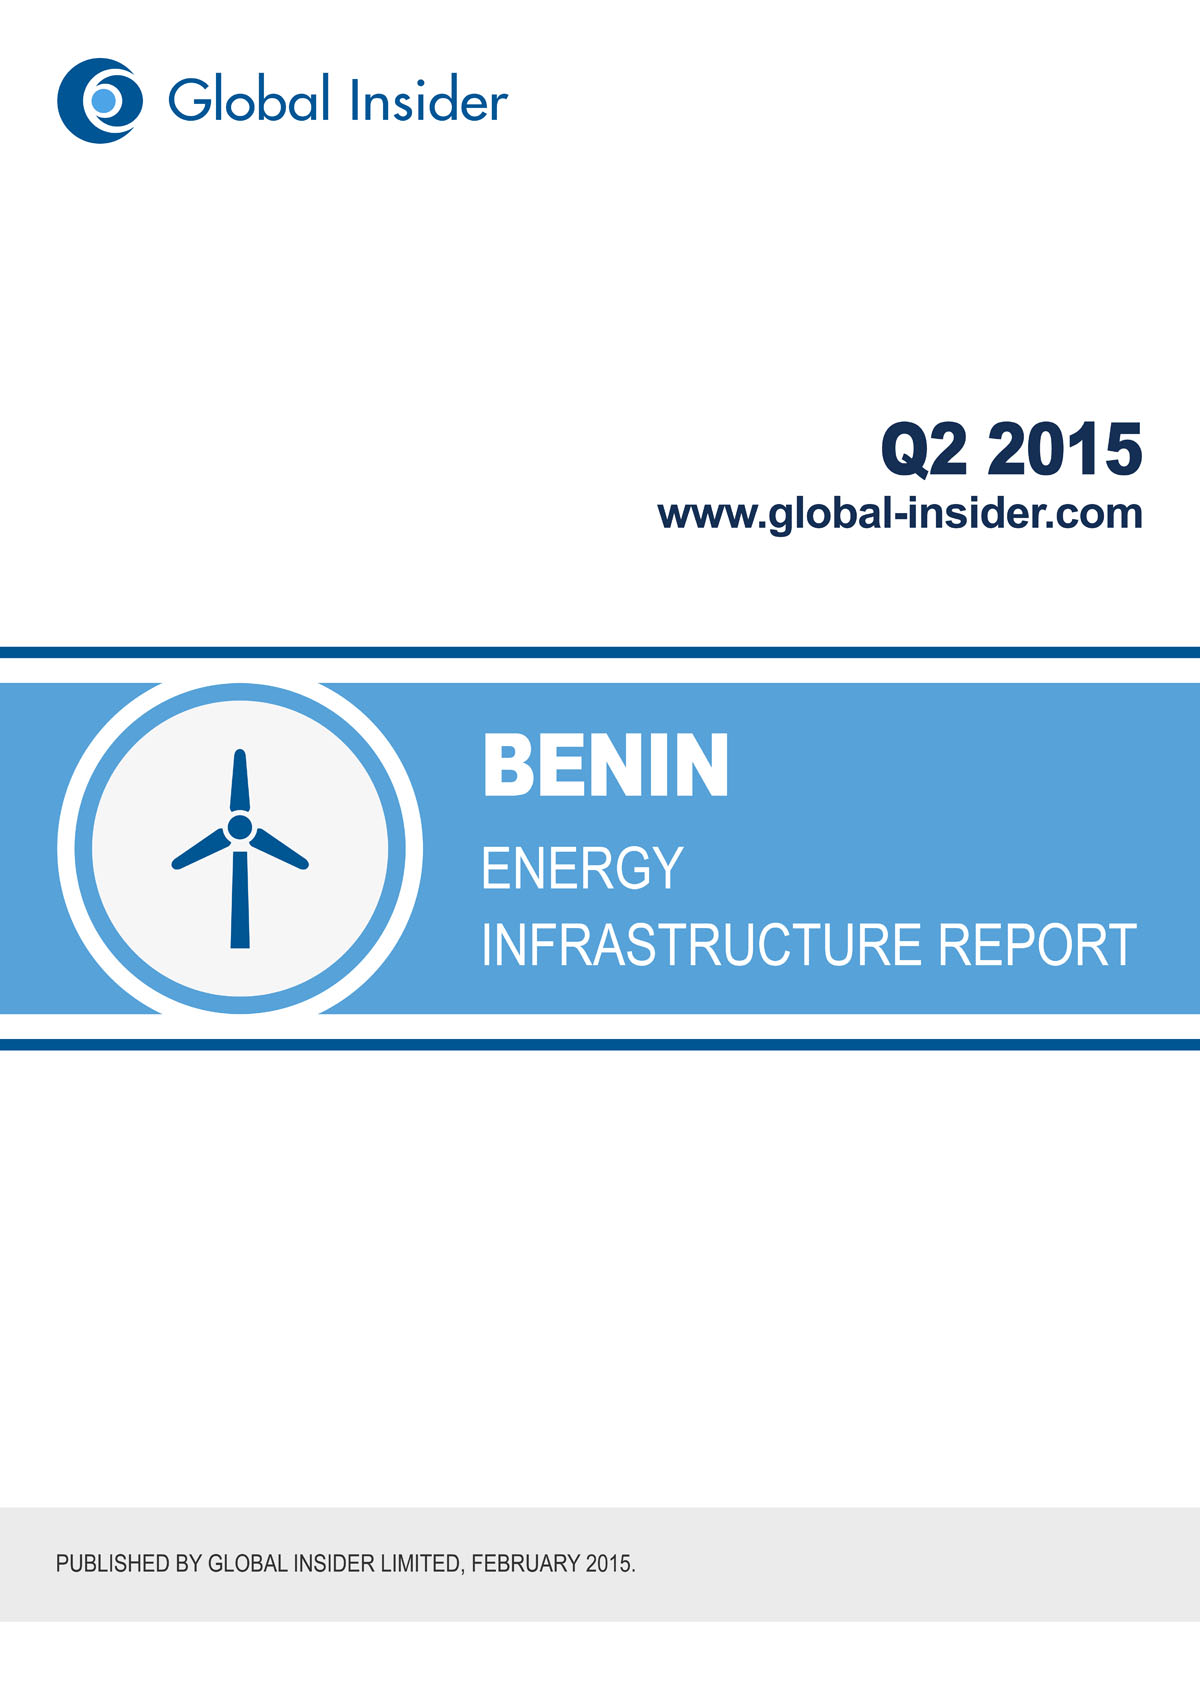 Benin Energy Infrastructure Report